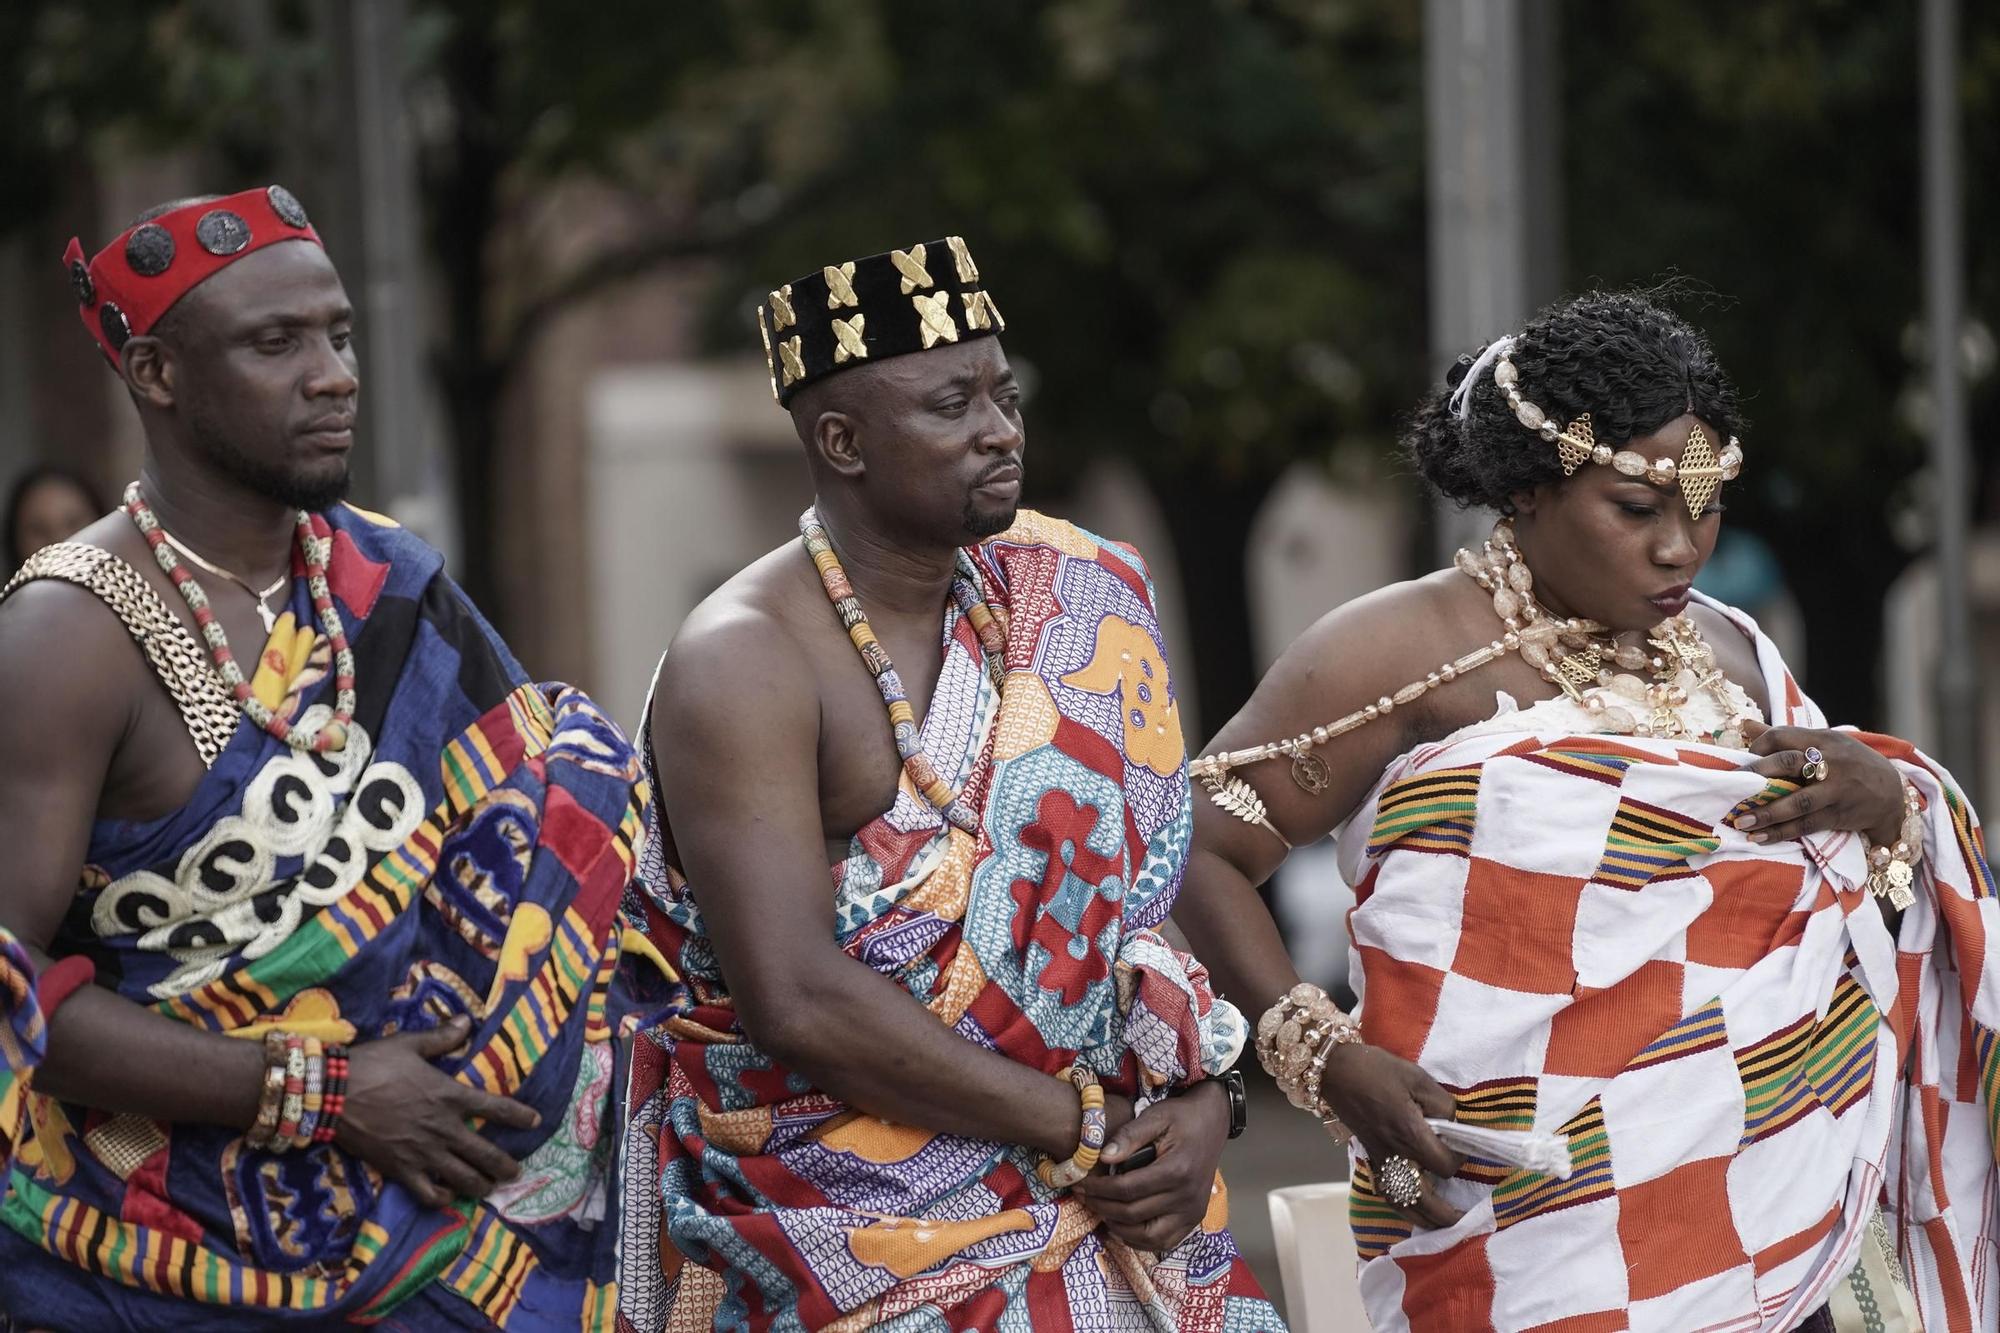 Totes les imatges de la festa solidària de la comunitat de Ghana